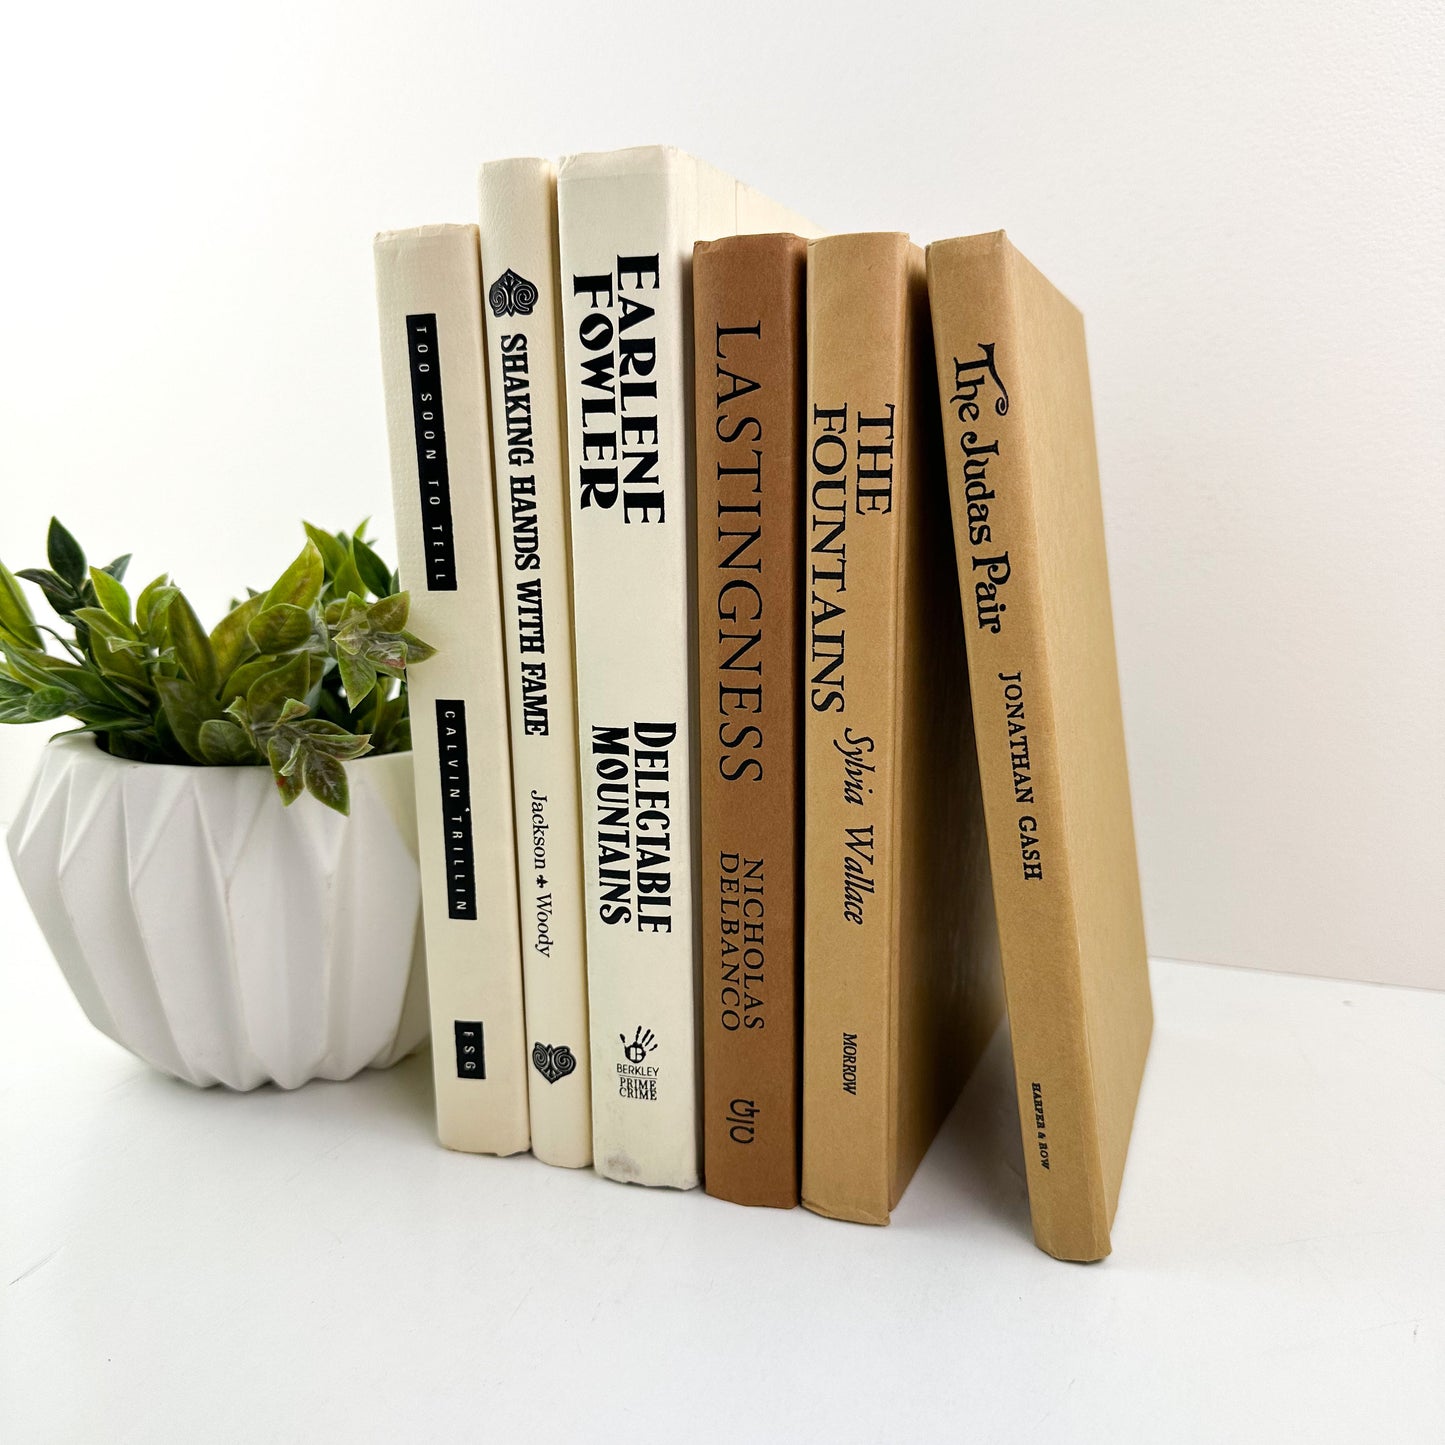 Bookshelf Decor, Brown Designer Books for Home Decor, Mantel Decor